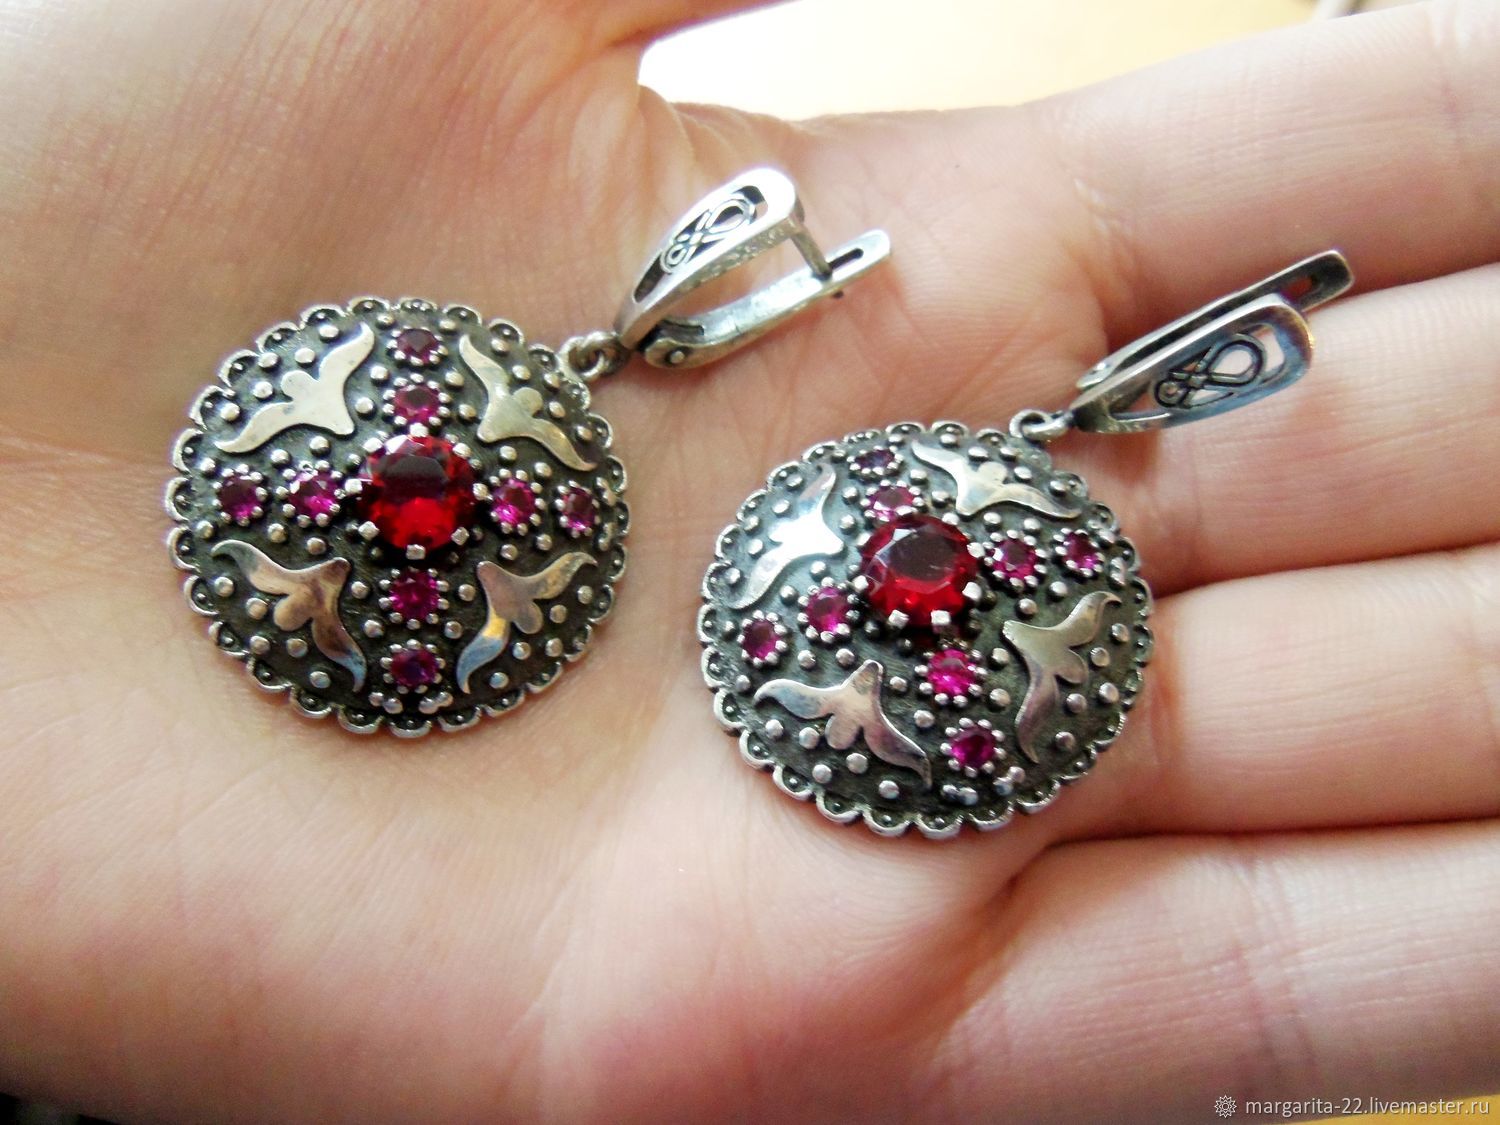 Армянские серебряные украшения